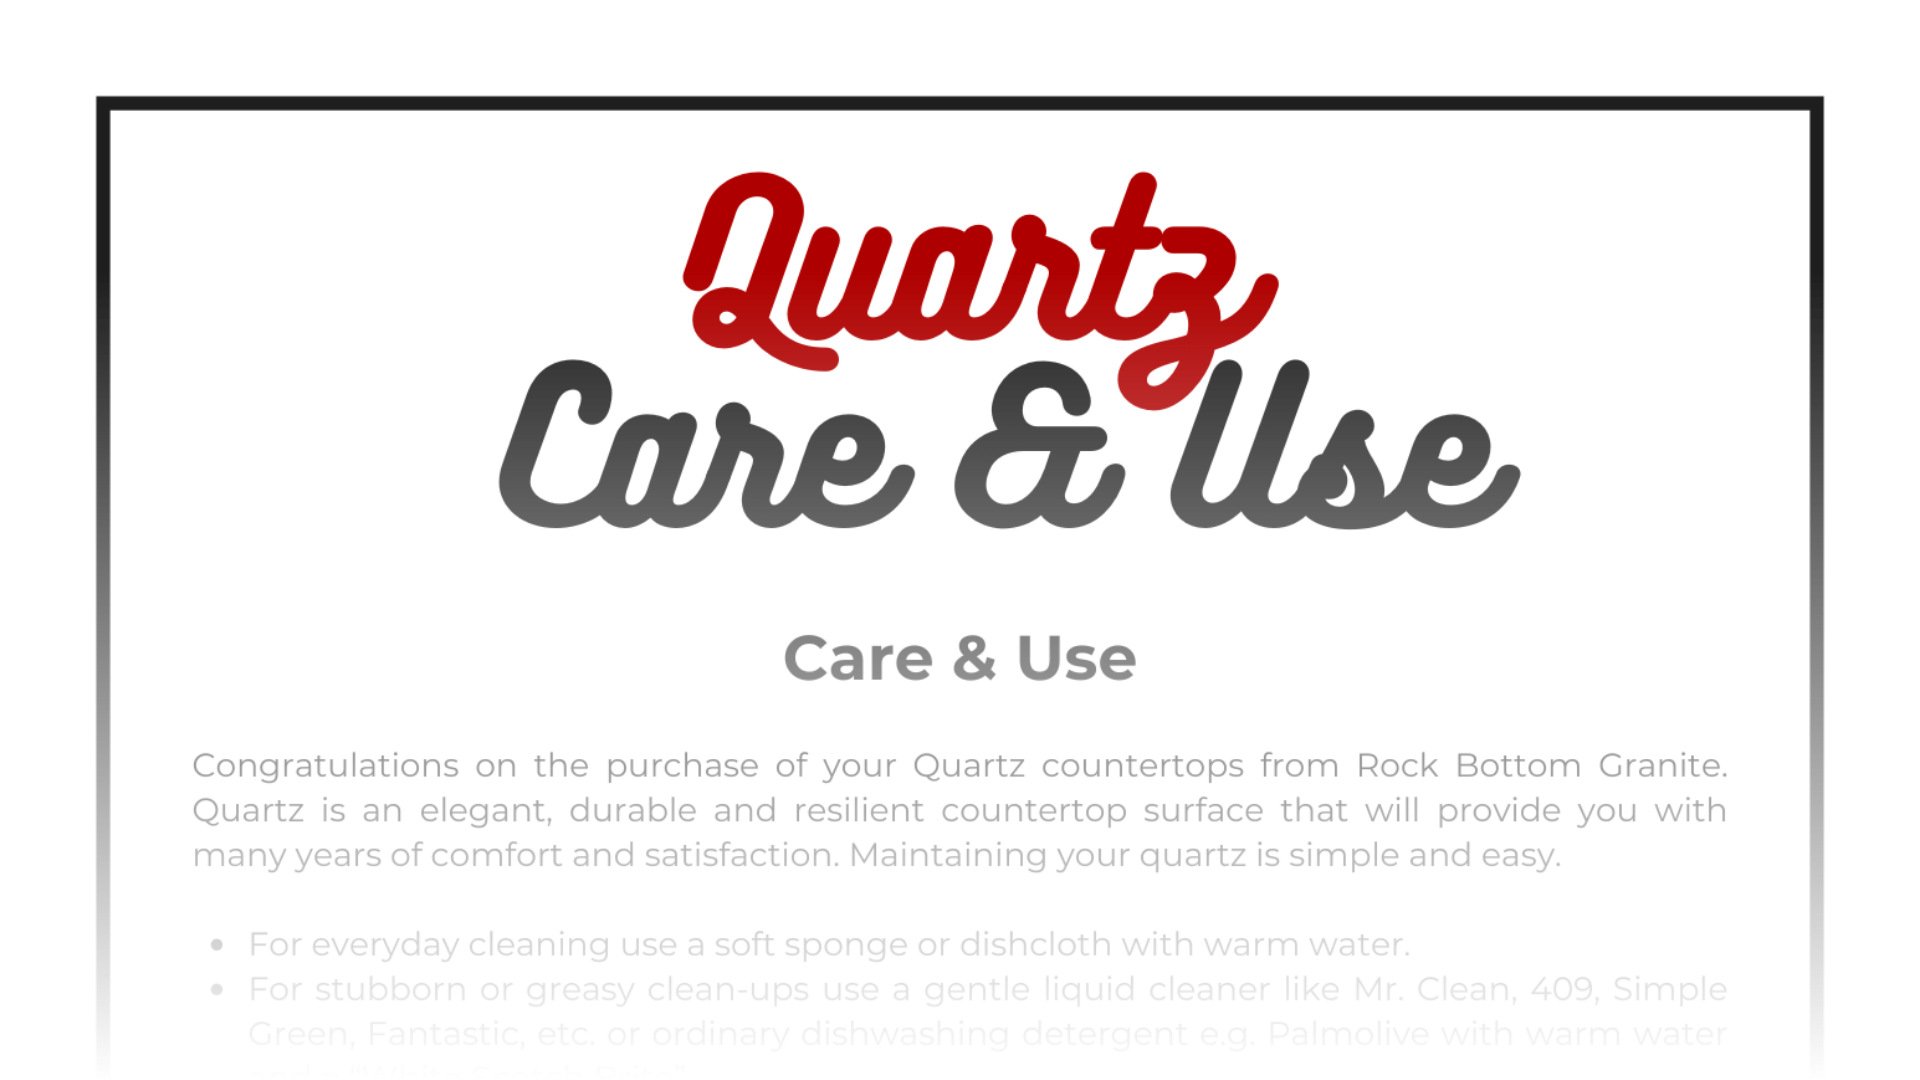 Quartz Care and Use